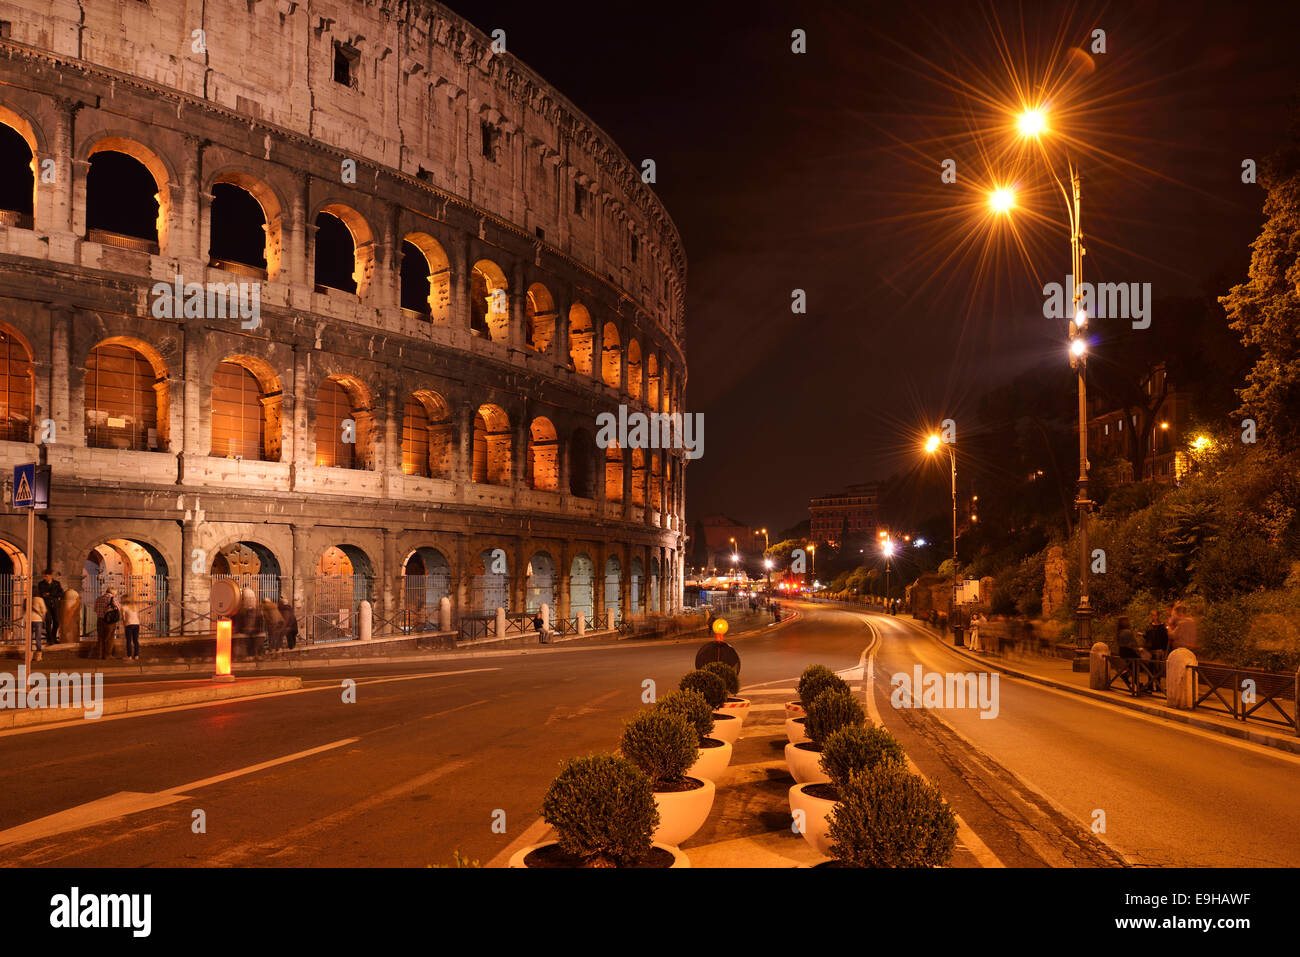 Illuminated Colosseum at night, Rome, Italy Stock Photo